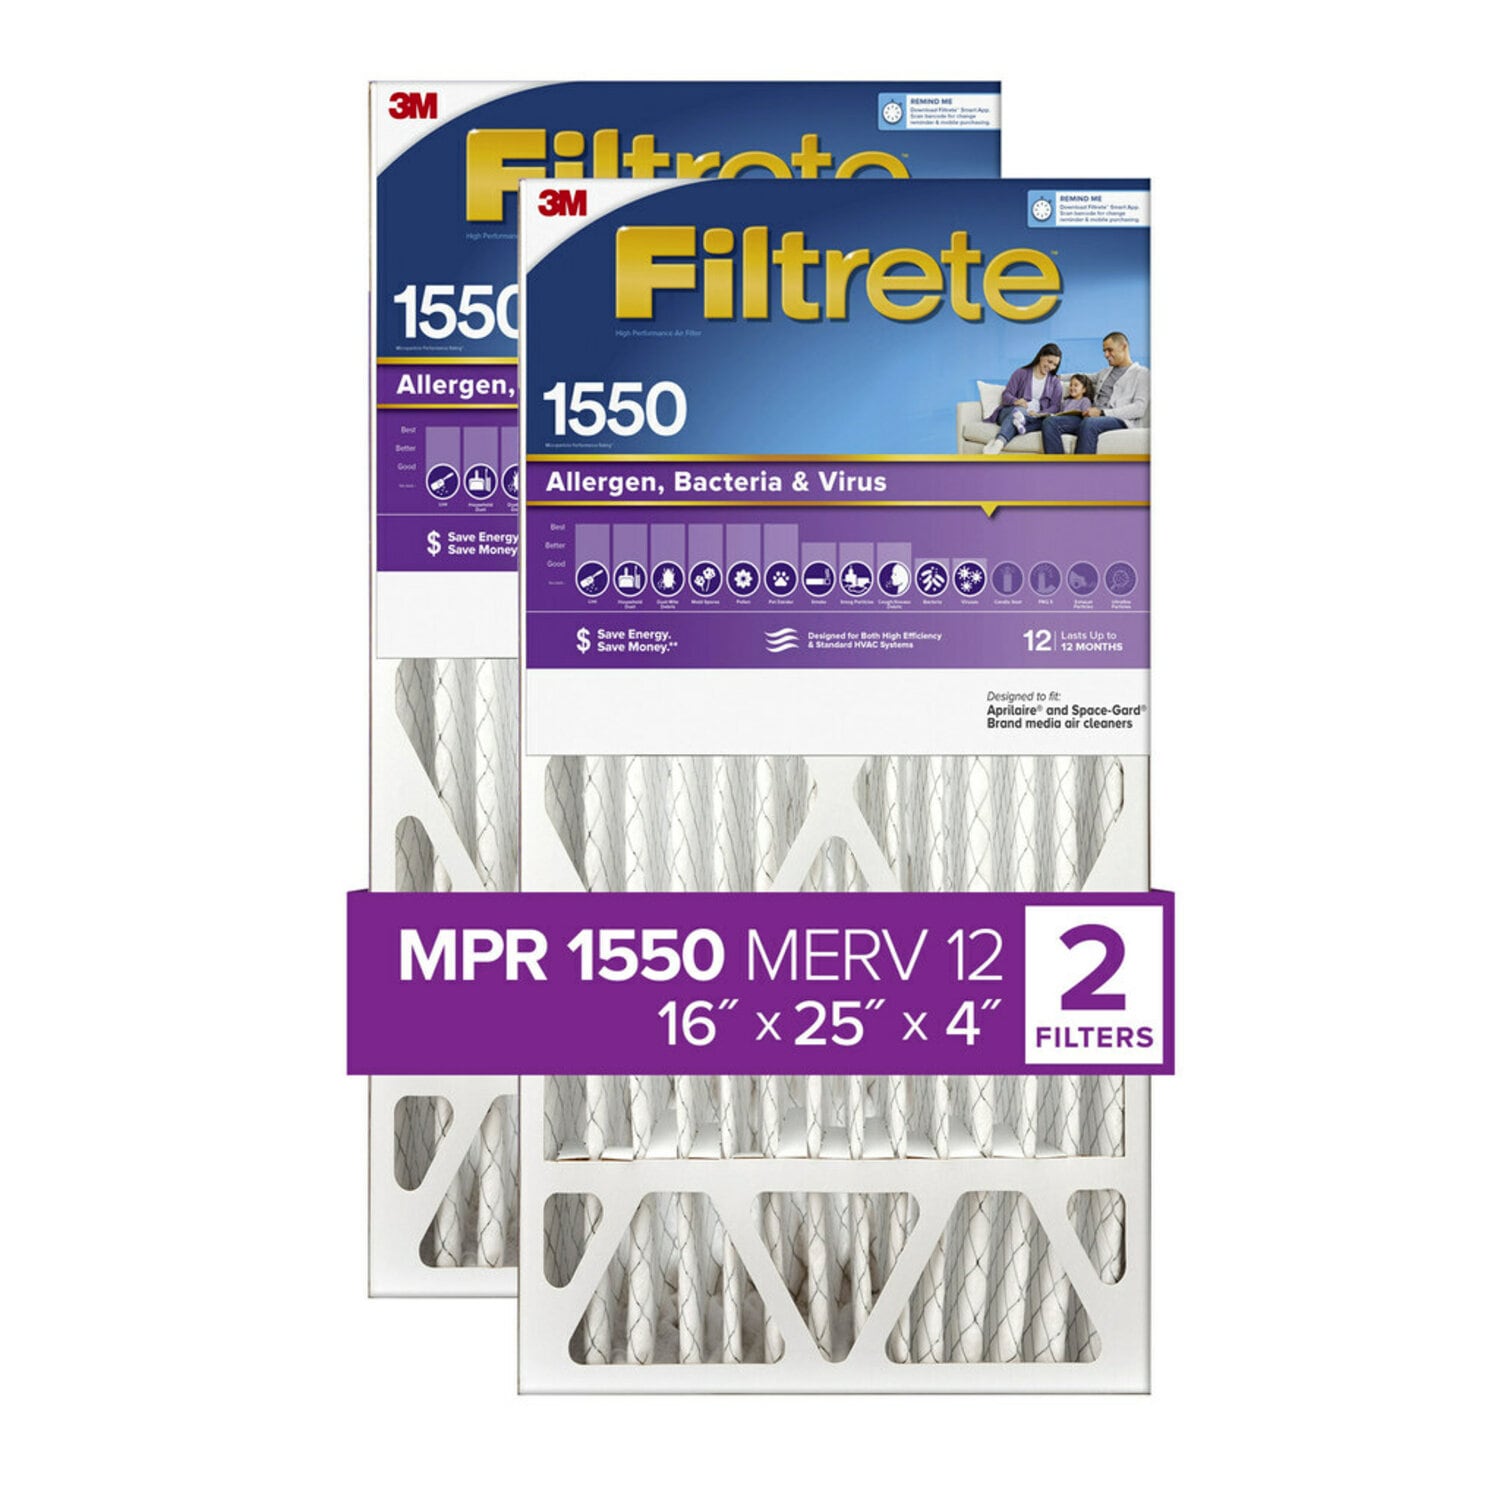 7100267940 - Filtrete High Performance Air Filter 1550 MPR NDP01-4S2PK-1E, 16 in x 25 in x 4 in (40.6 cm x 63.5 cm x 10.1 cm)